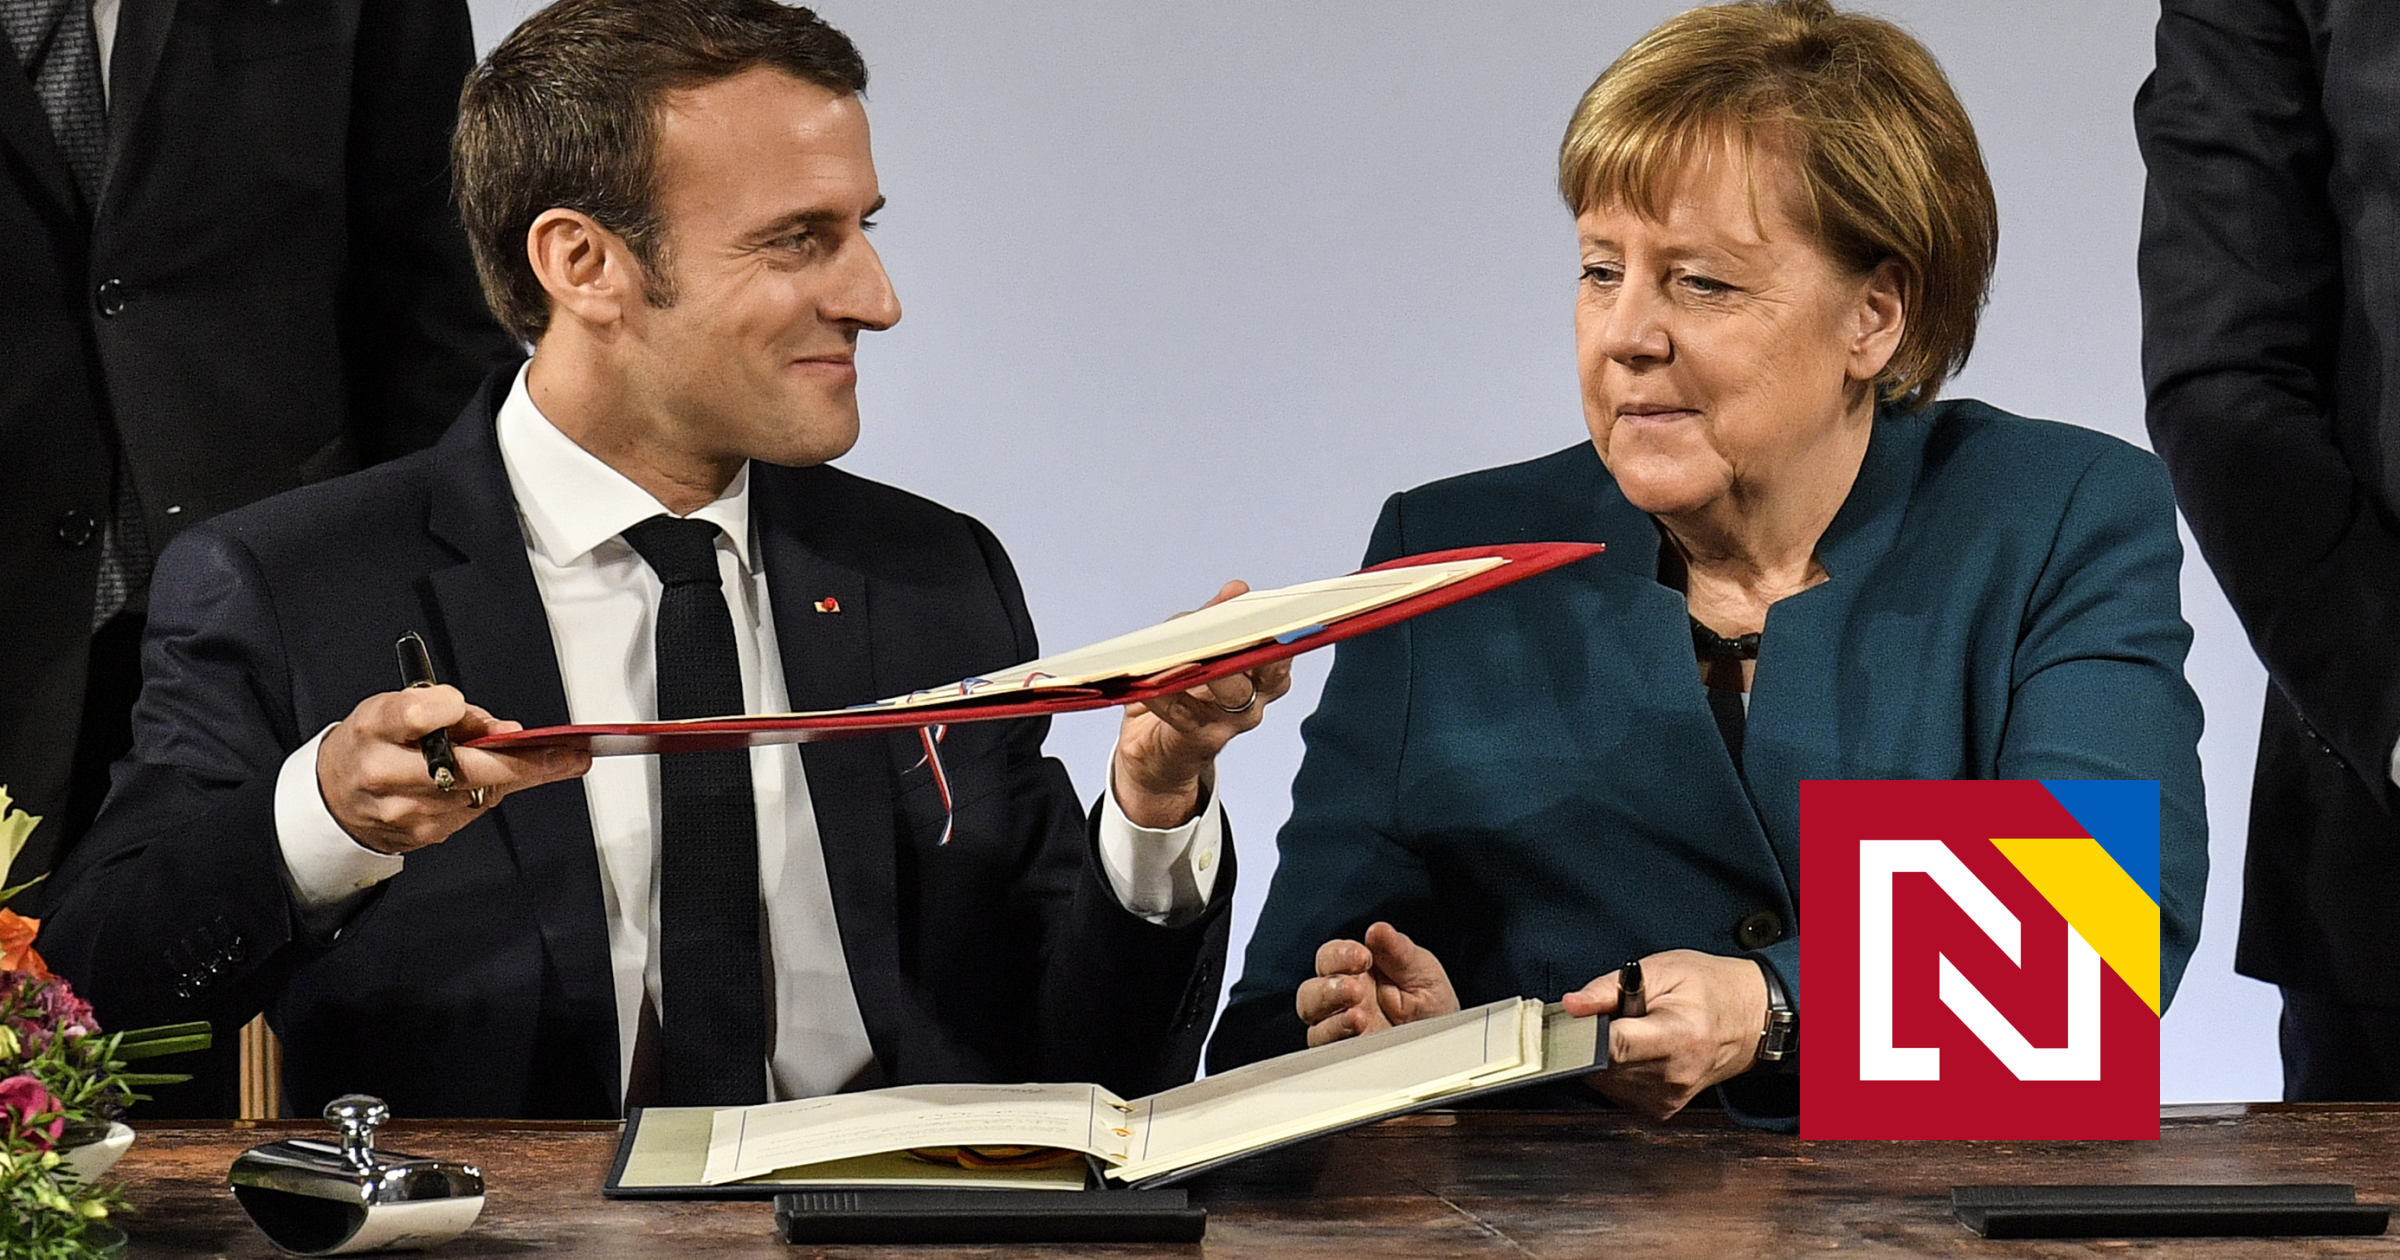 Aucun super-État n’émerge.  Que signifie le nouveau traité entre l’Allemagne et la France ?